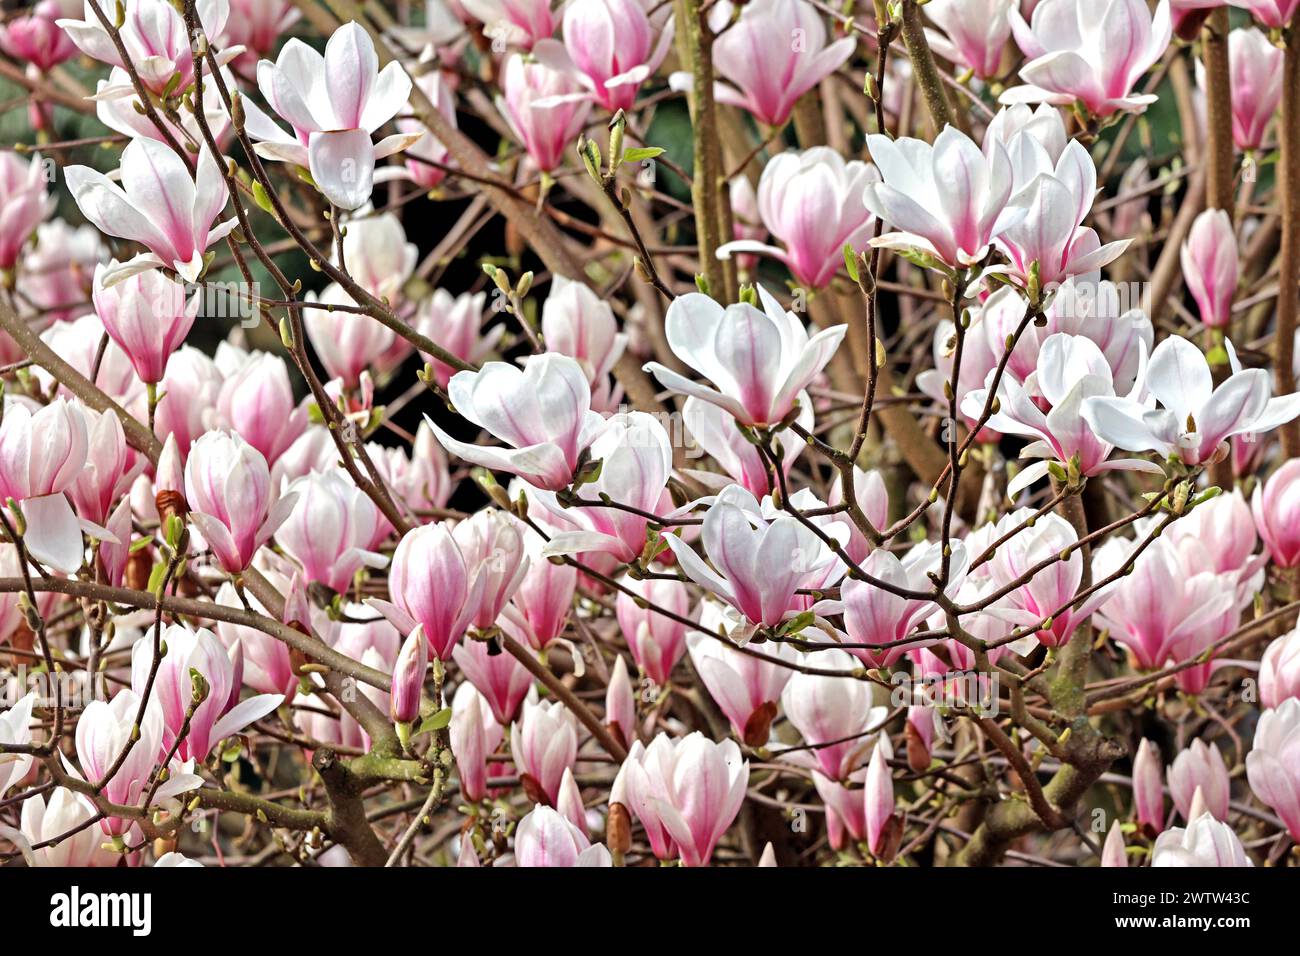 Blütezeit der Ziergehölze Die Blüten einer Magnolie zur Blütezeit im Frühling *** Flowering time of ornamental shrubs The flowers of a magnolia in bloom in spring Stock Photo